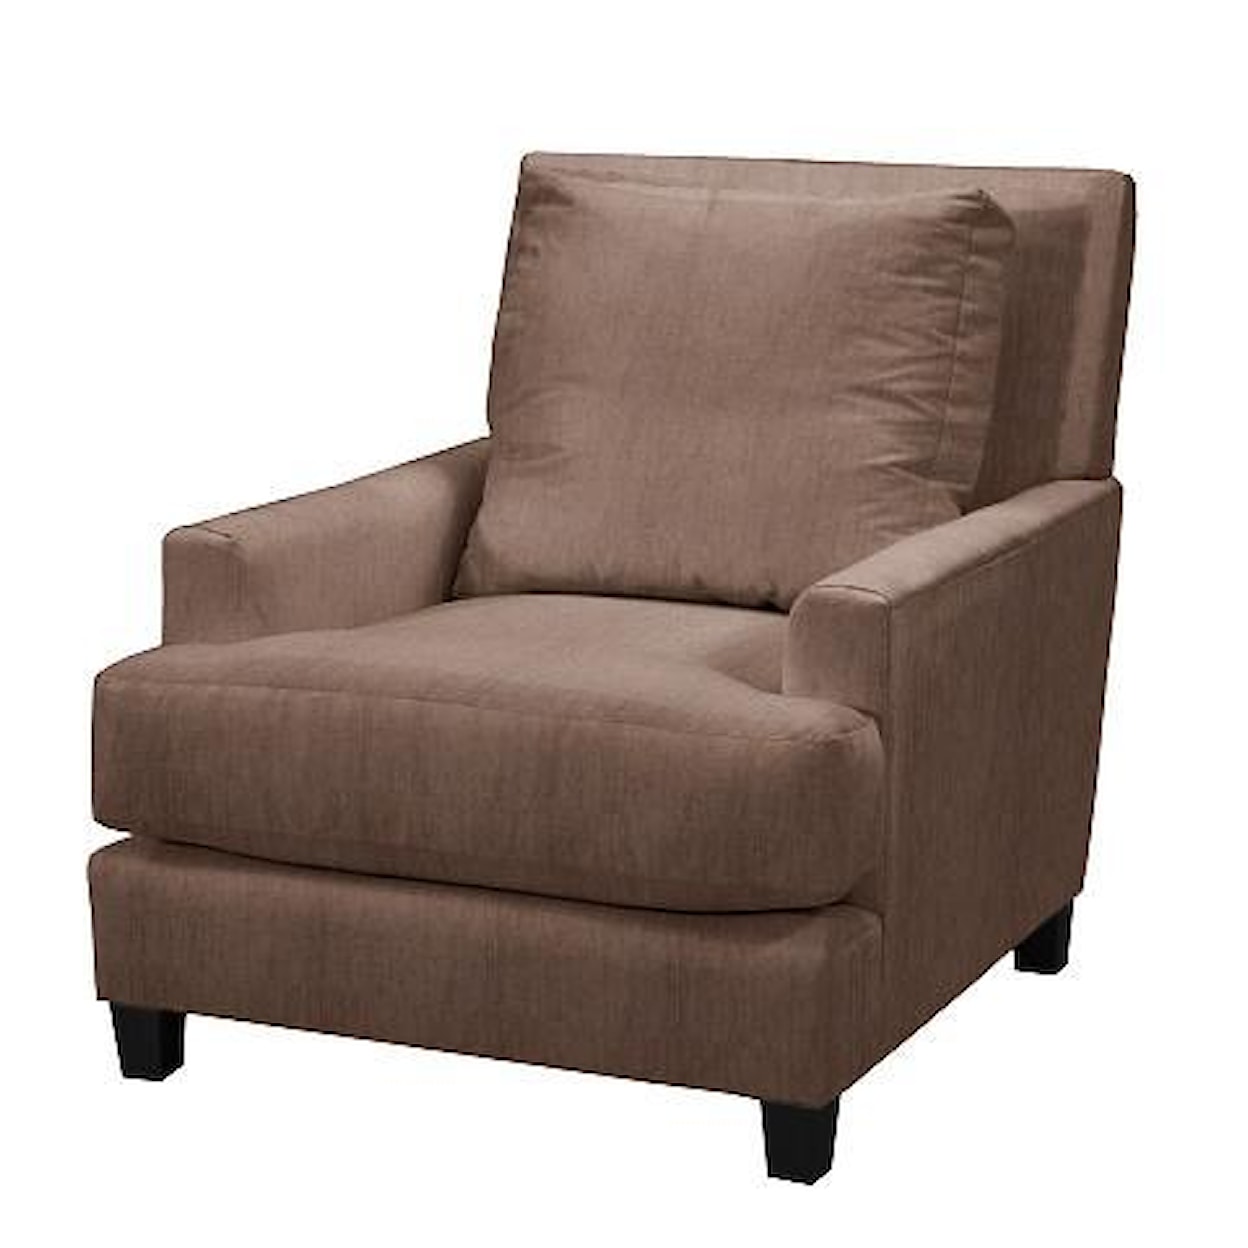 Norwalk Linkin Upholstered Chair